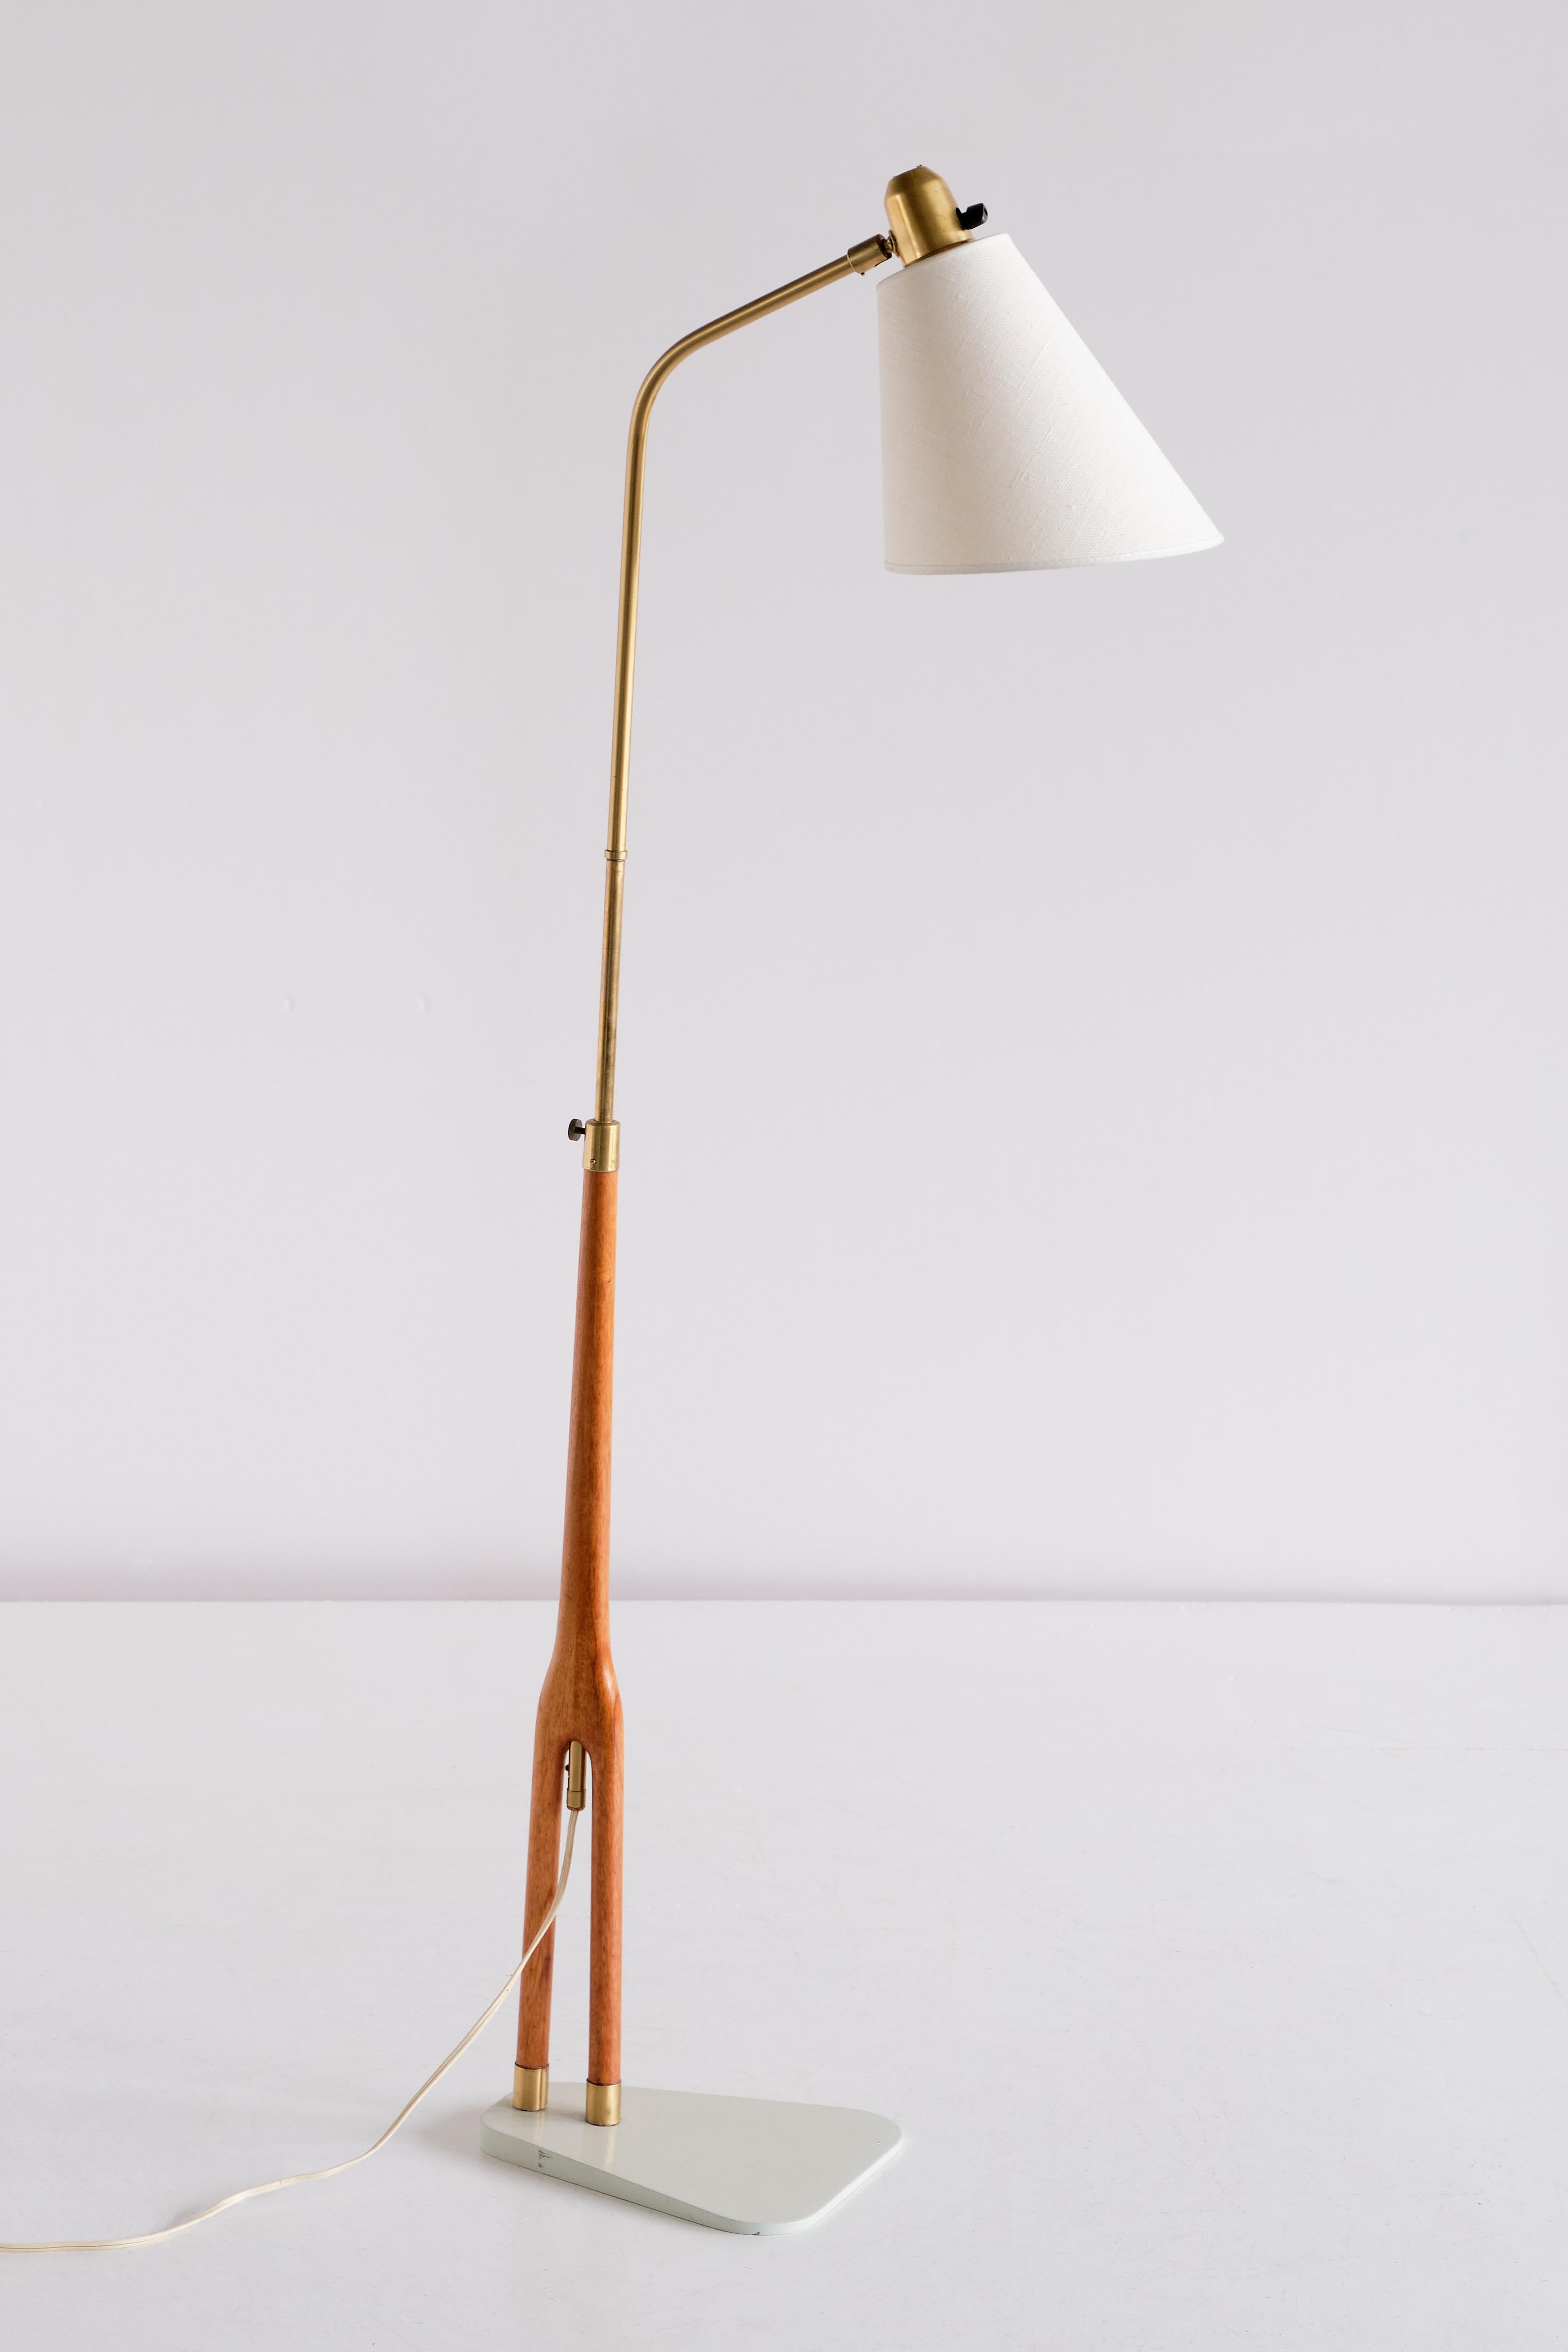 Ce remarquable lampadaire a été conçu par Hans Bergström et produit par ASEA en Suède au début des années 1950. Un modèle très rare et élégant de l'un des maîtres de l'éclairage moderne suédois.

La structure à deux pieds en teck et laiton repose